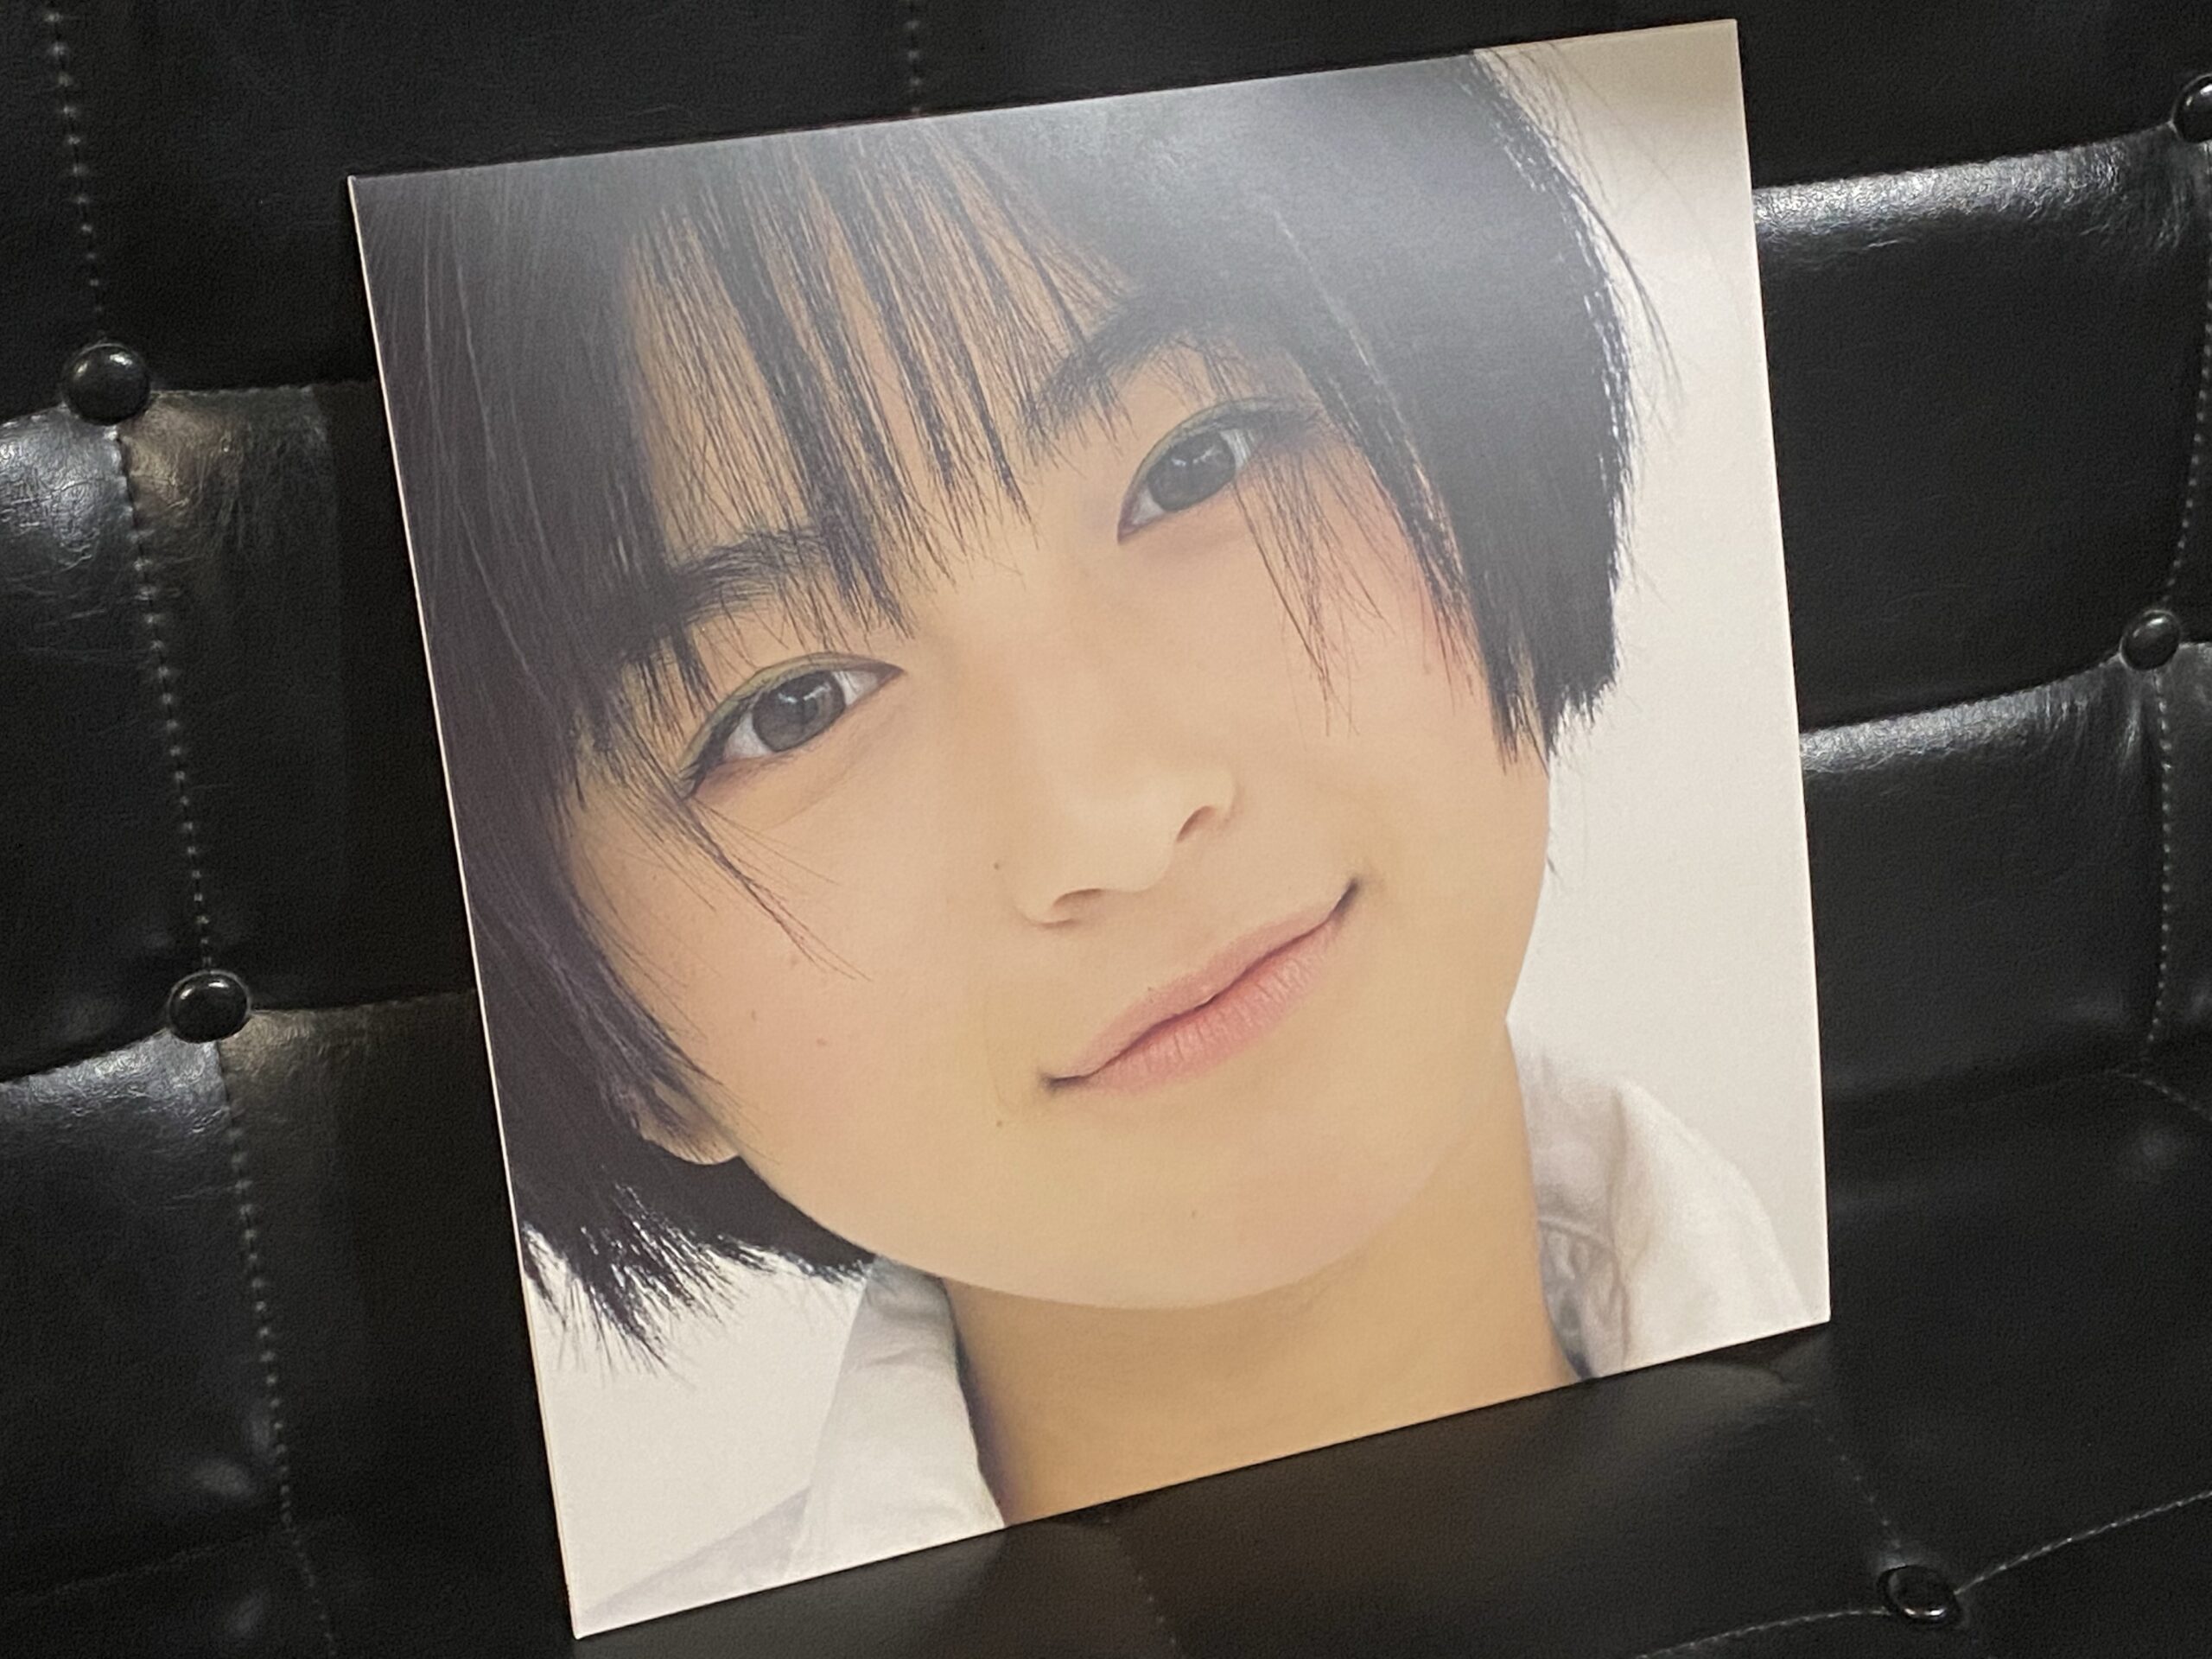 広末涼子さんのアルバム「ARIGATO！」をレコードで購入した話 / 今日より明日、僕は歳をとる。